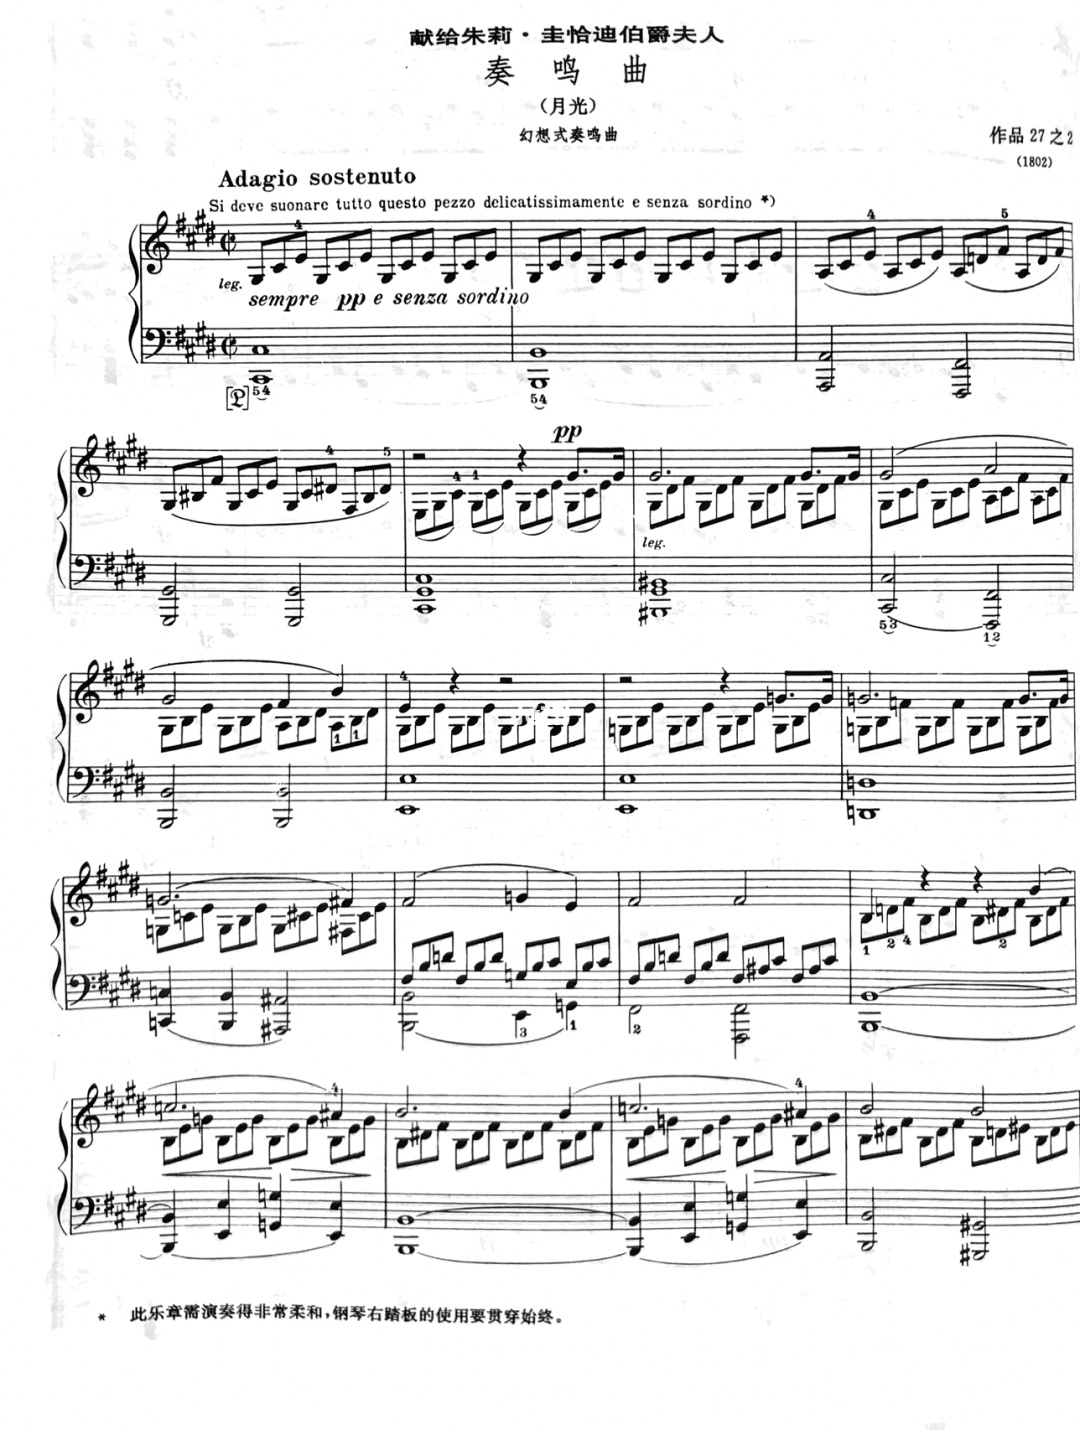 贝多芬钢琴曲简谱数字(贝多芬钢琴曲欣赏100首简谱)